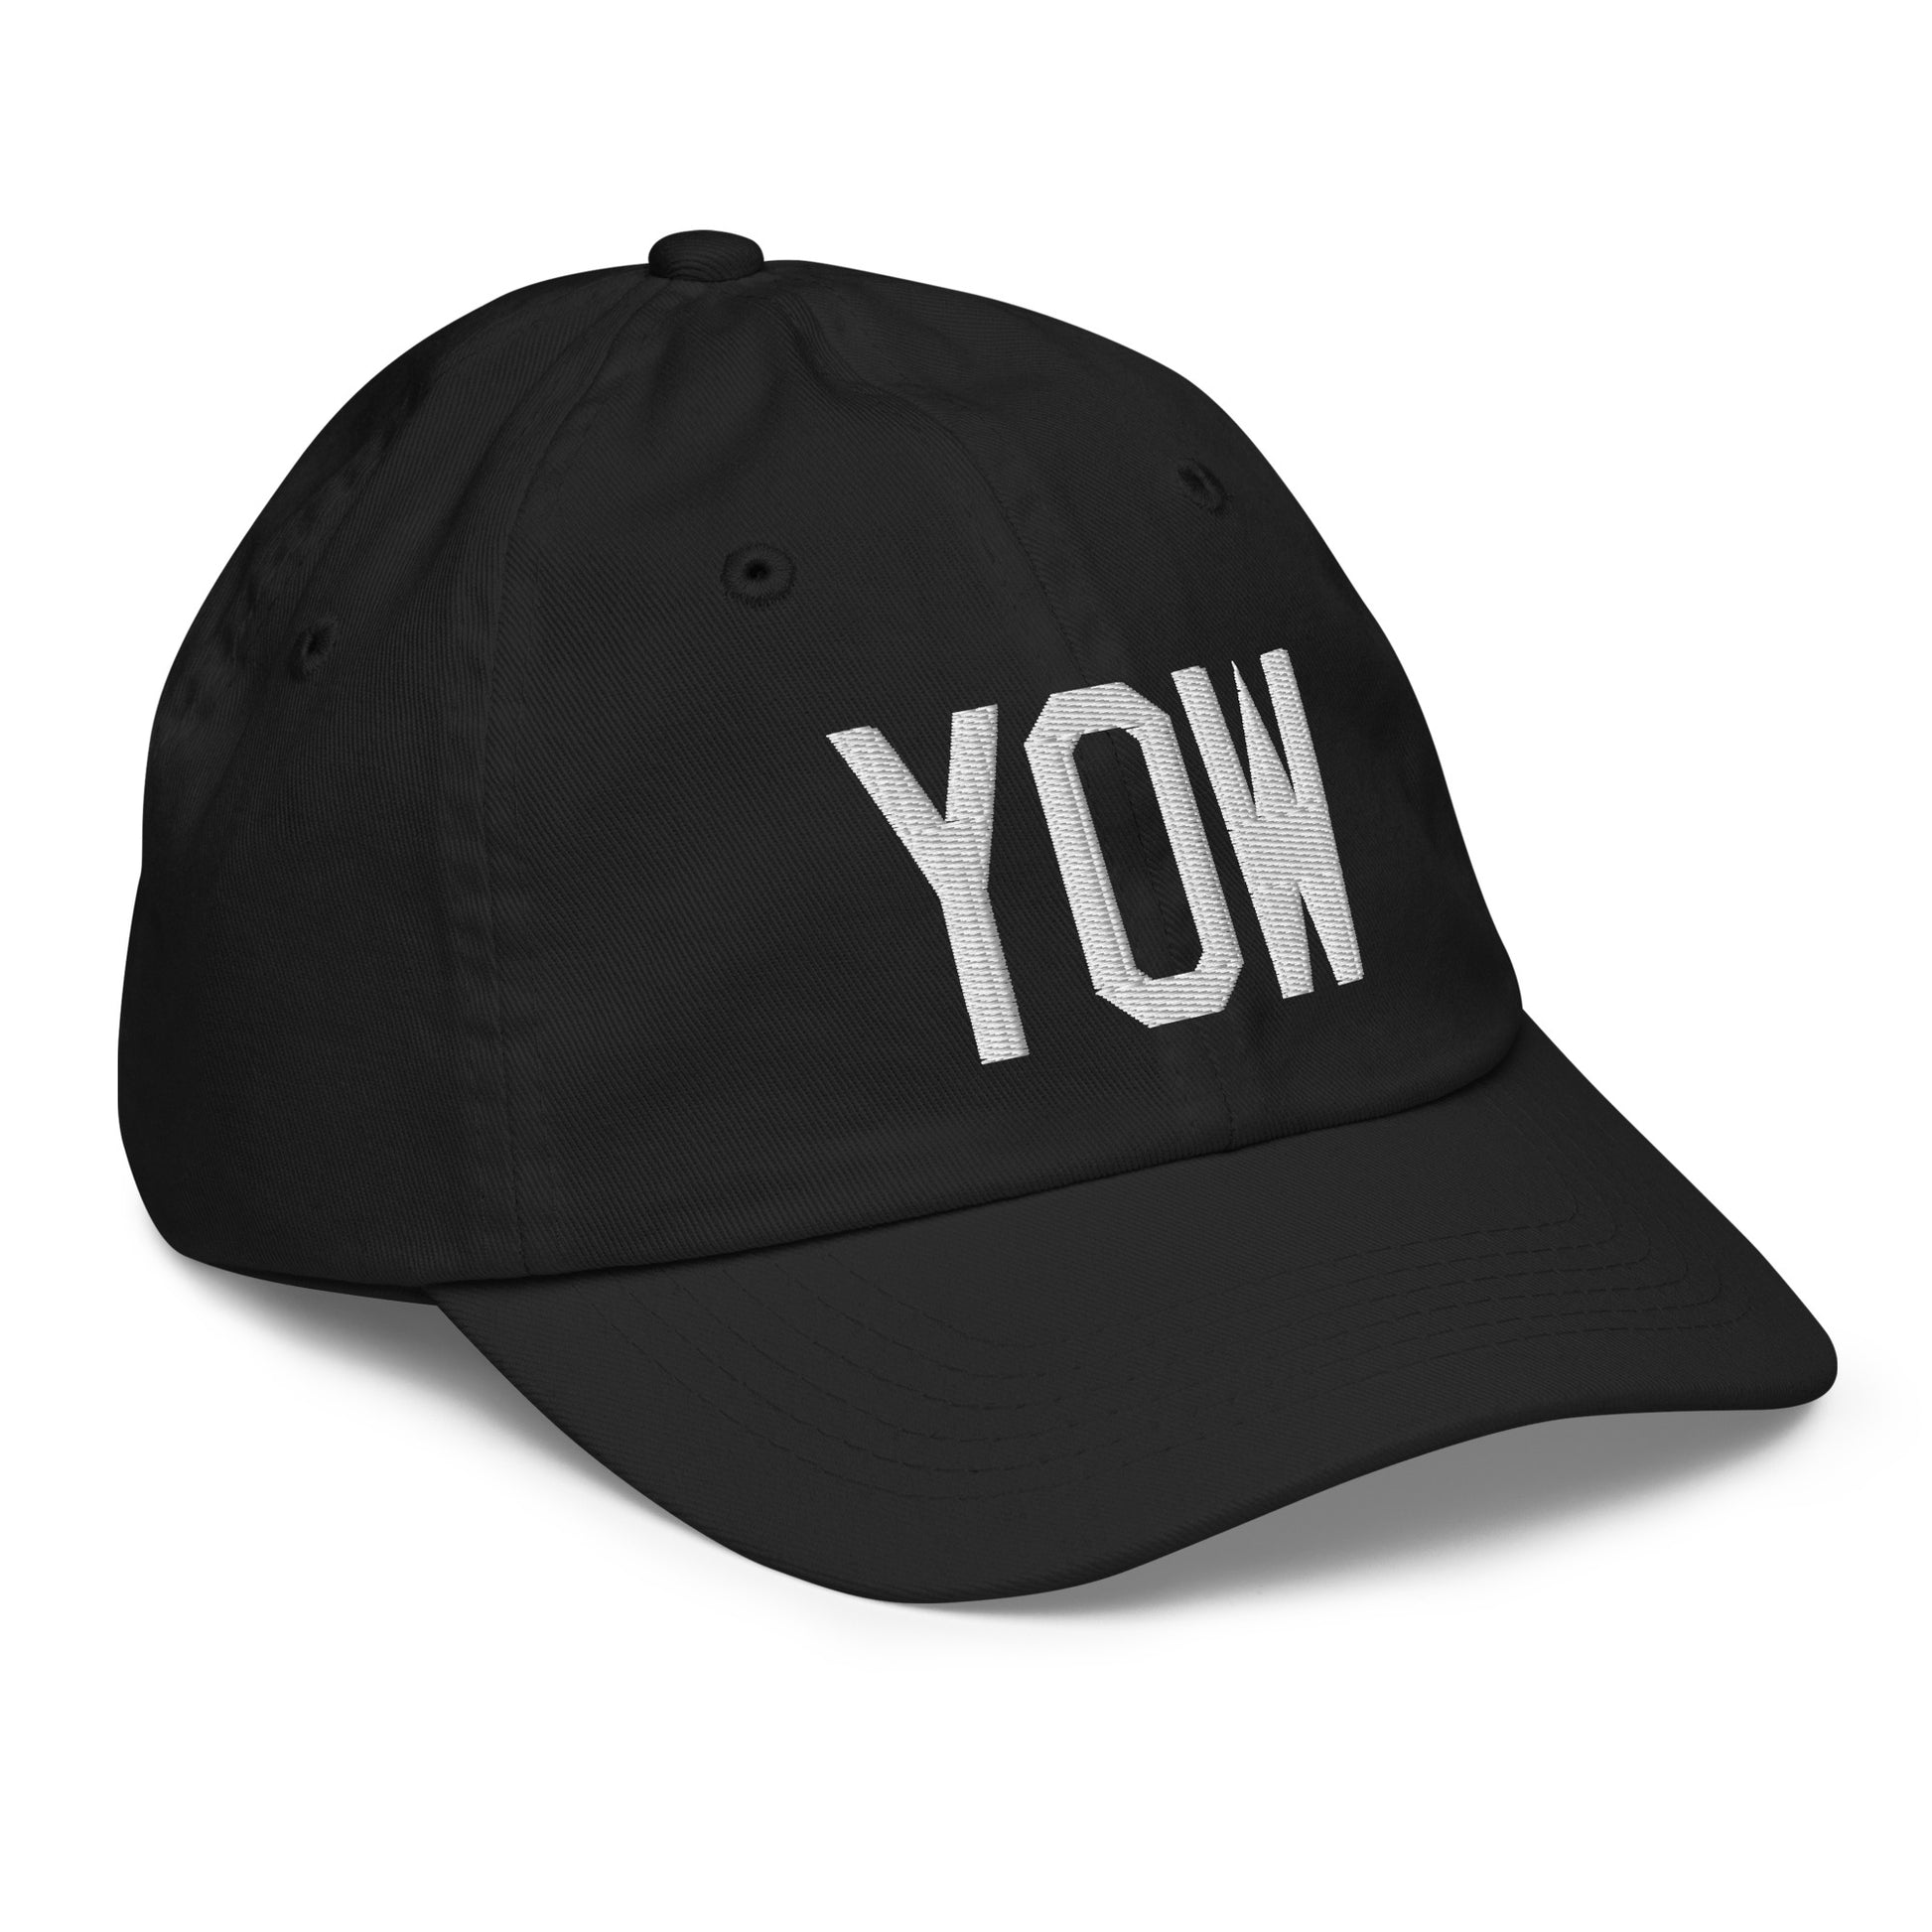 Airport Code Kid's Baseball Cap - White • YOW Ottawa • YHM Designs - Image 12